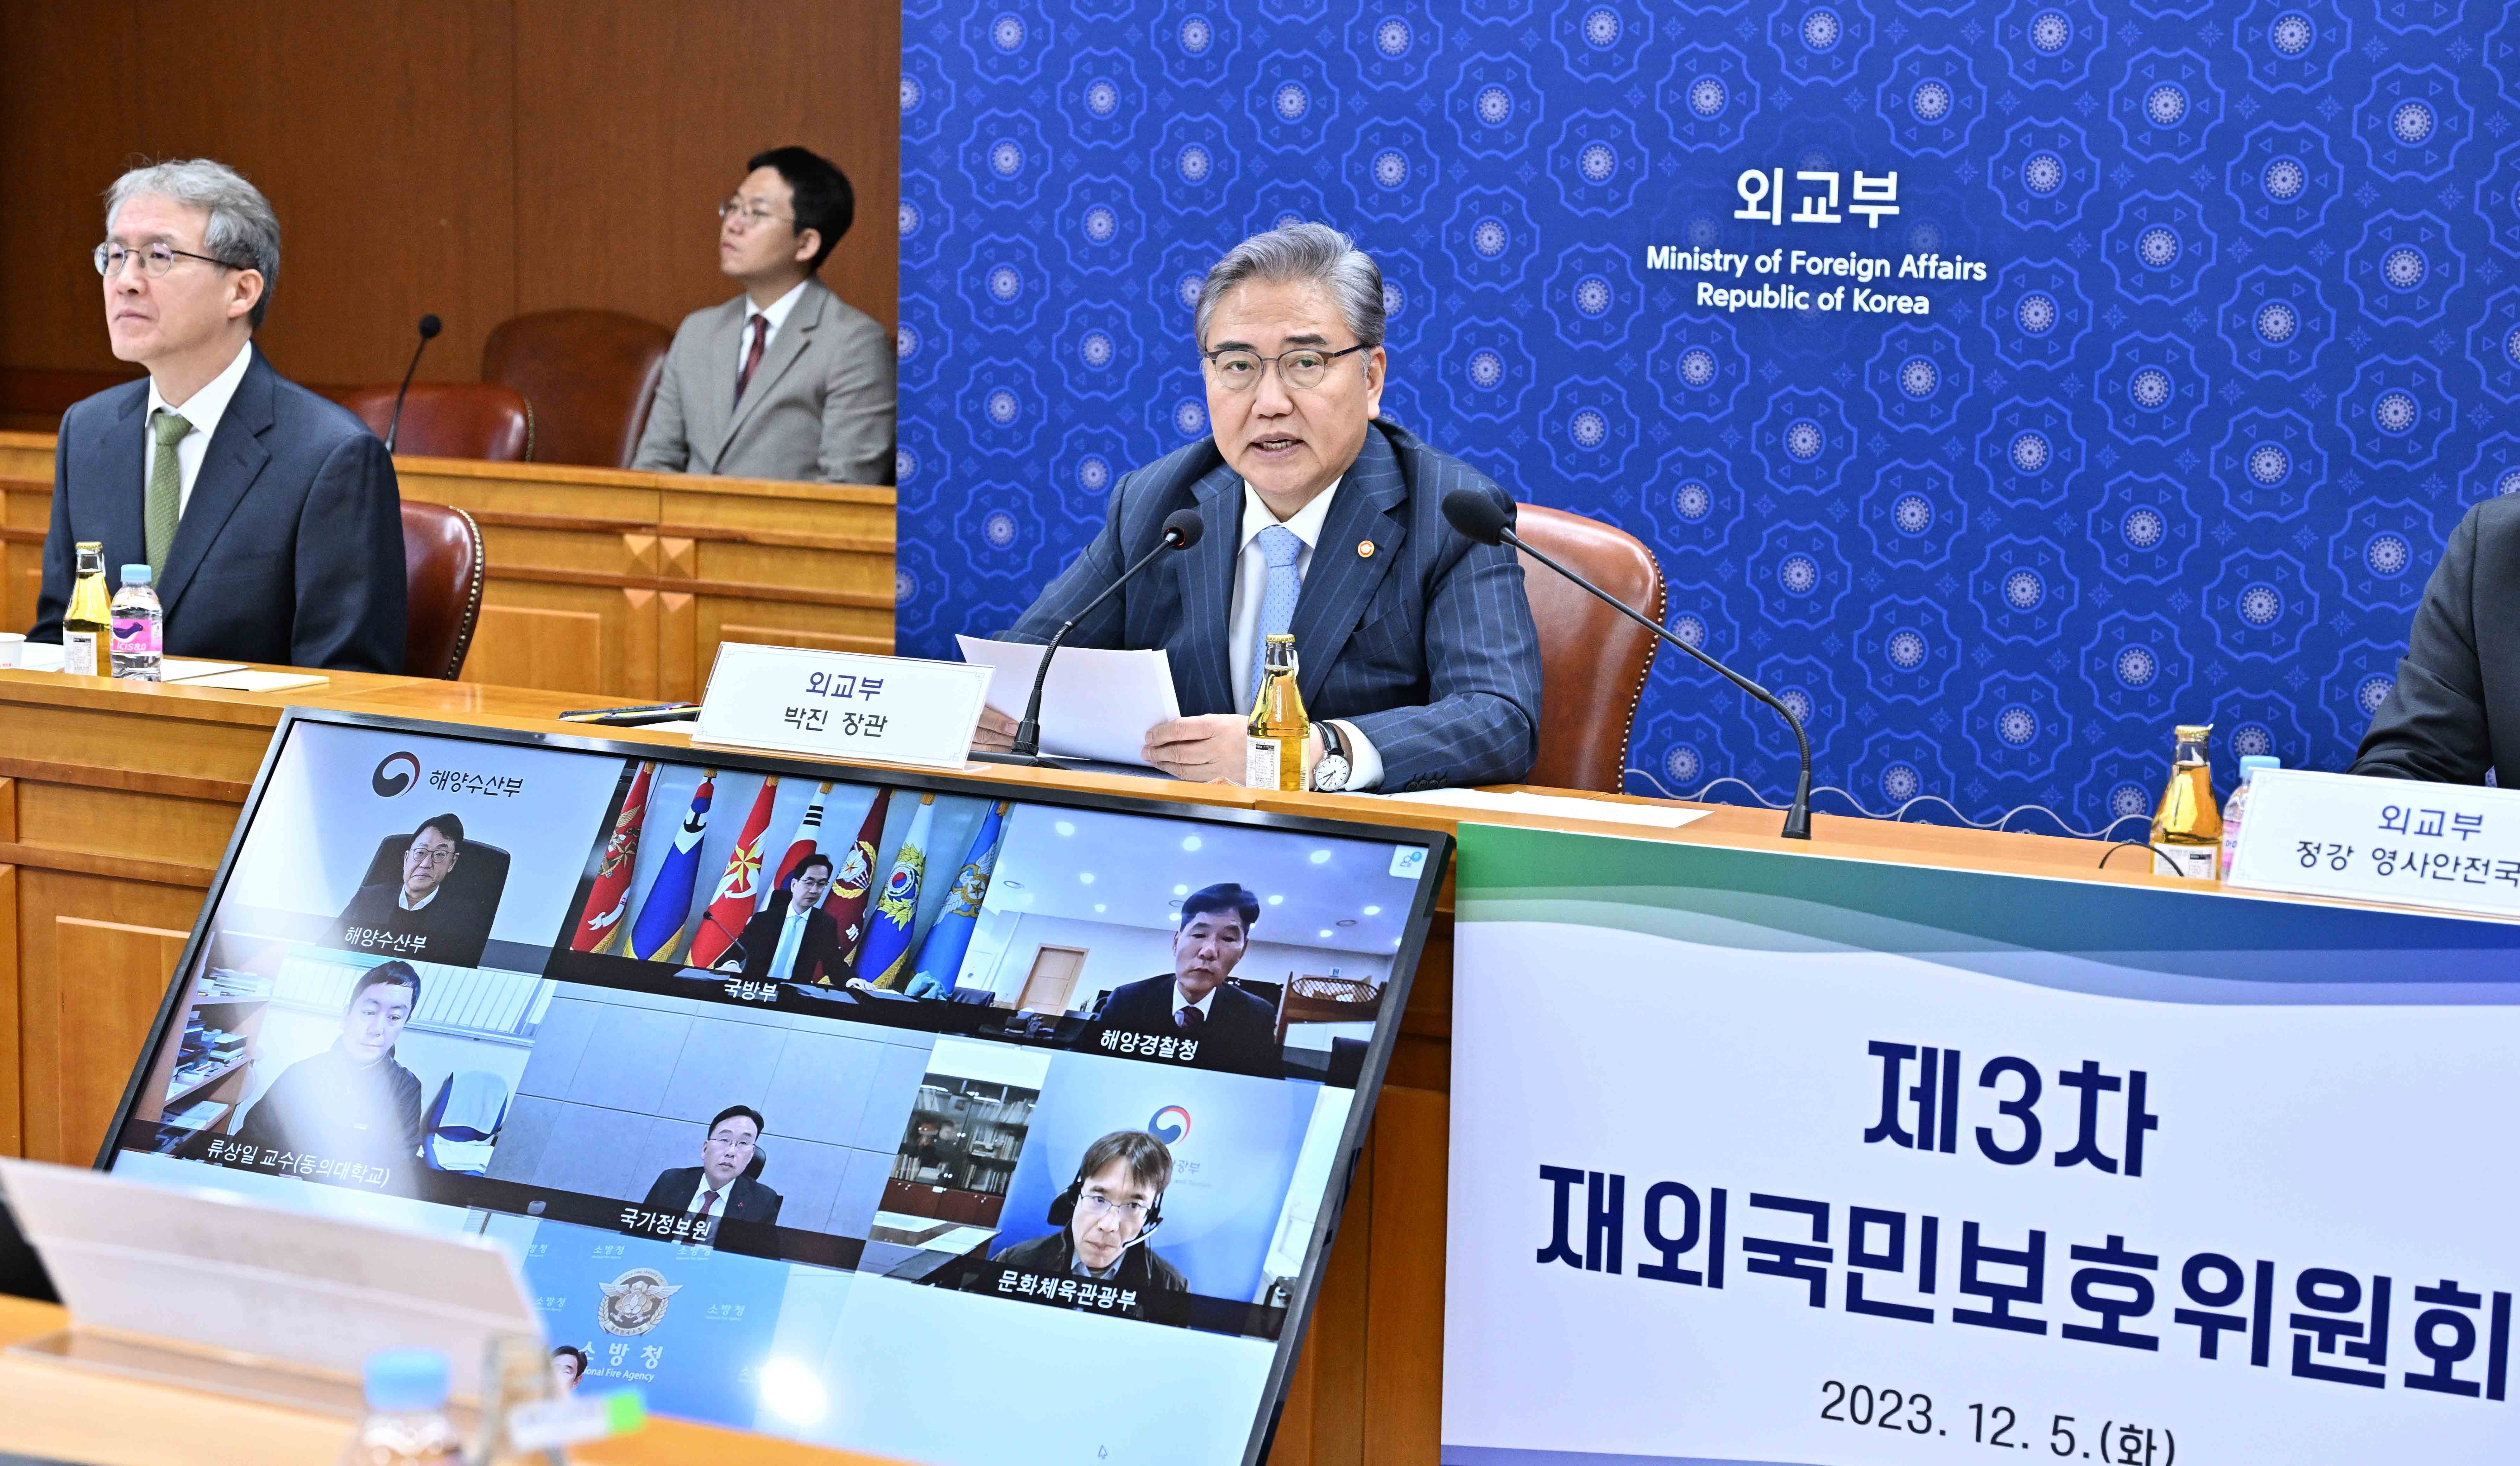 제3차 재외국민보호위원회 회의 개최